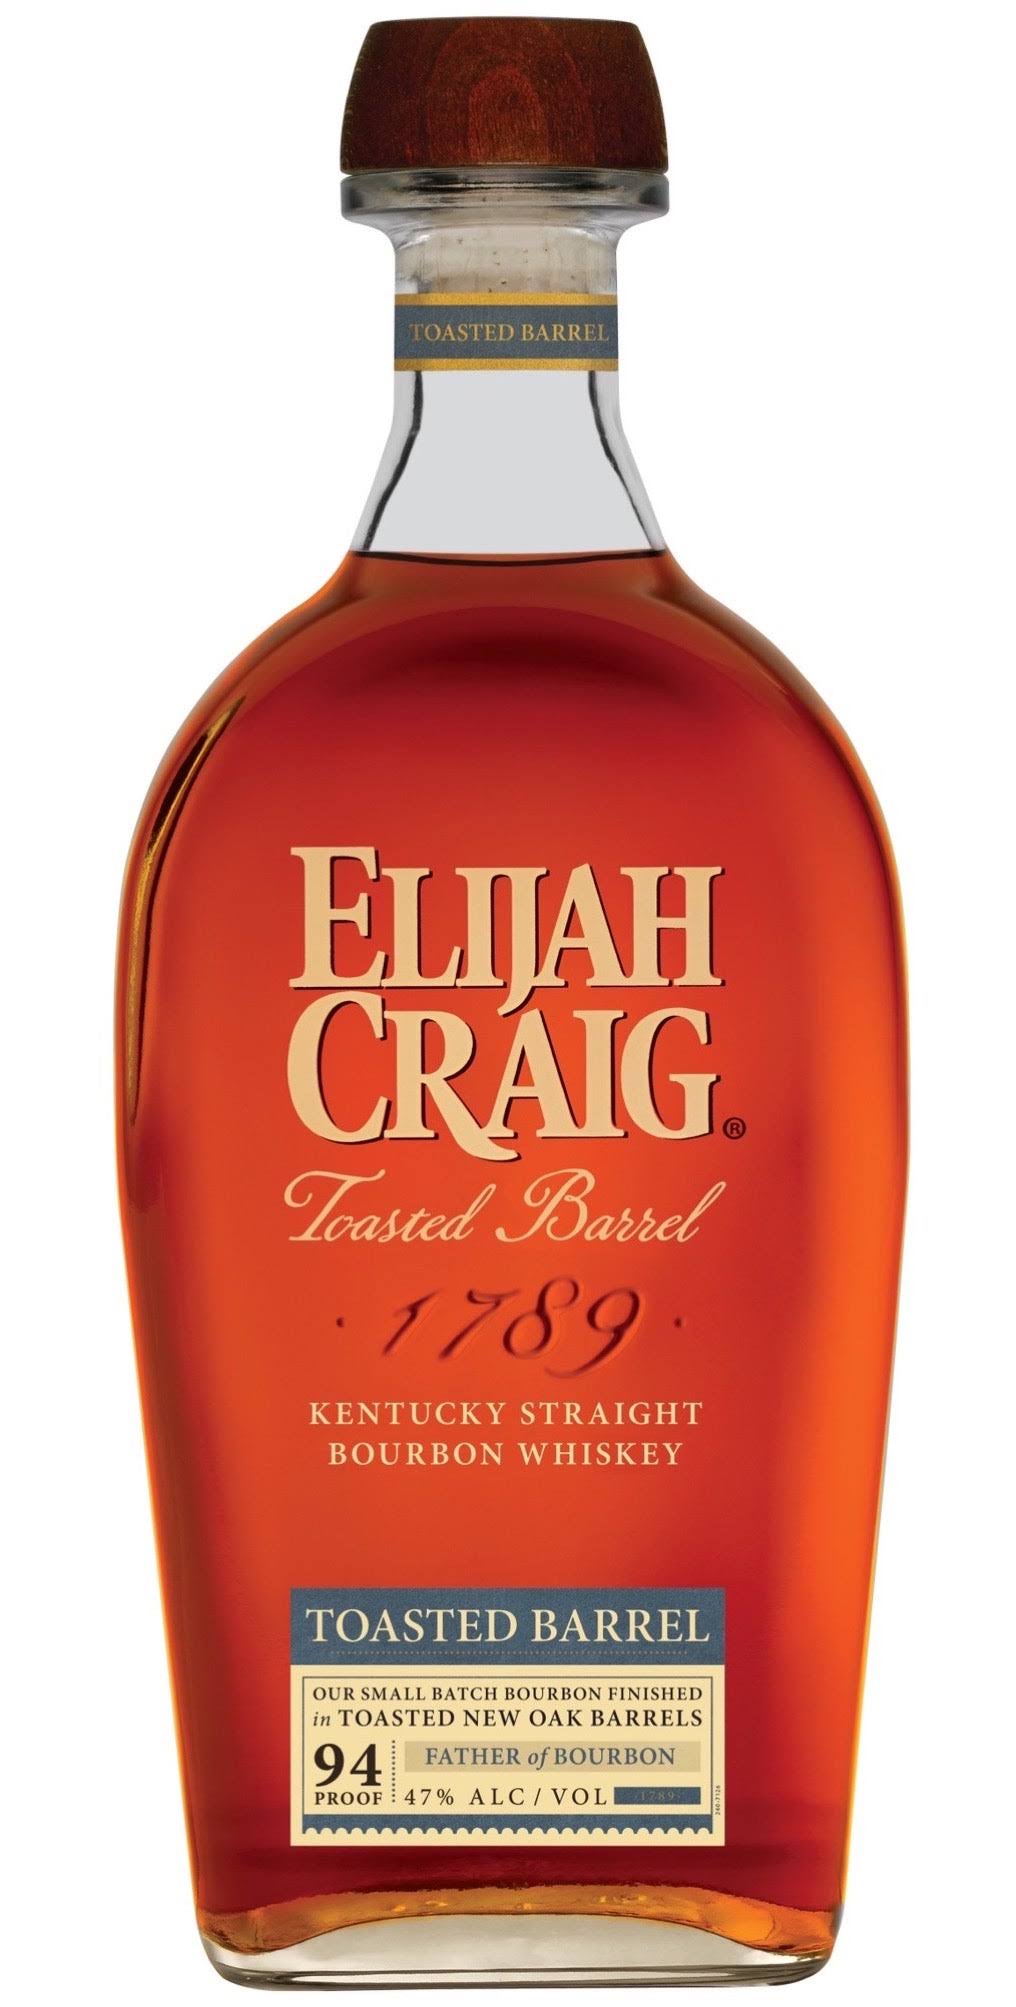 Elijah Craig Toasted Barrel Straight Bourbon Whiskey 750ml Bottle